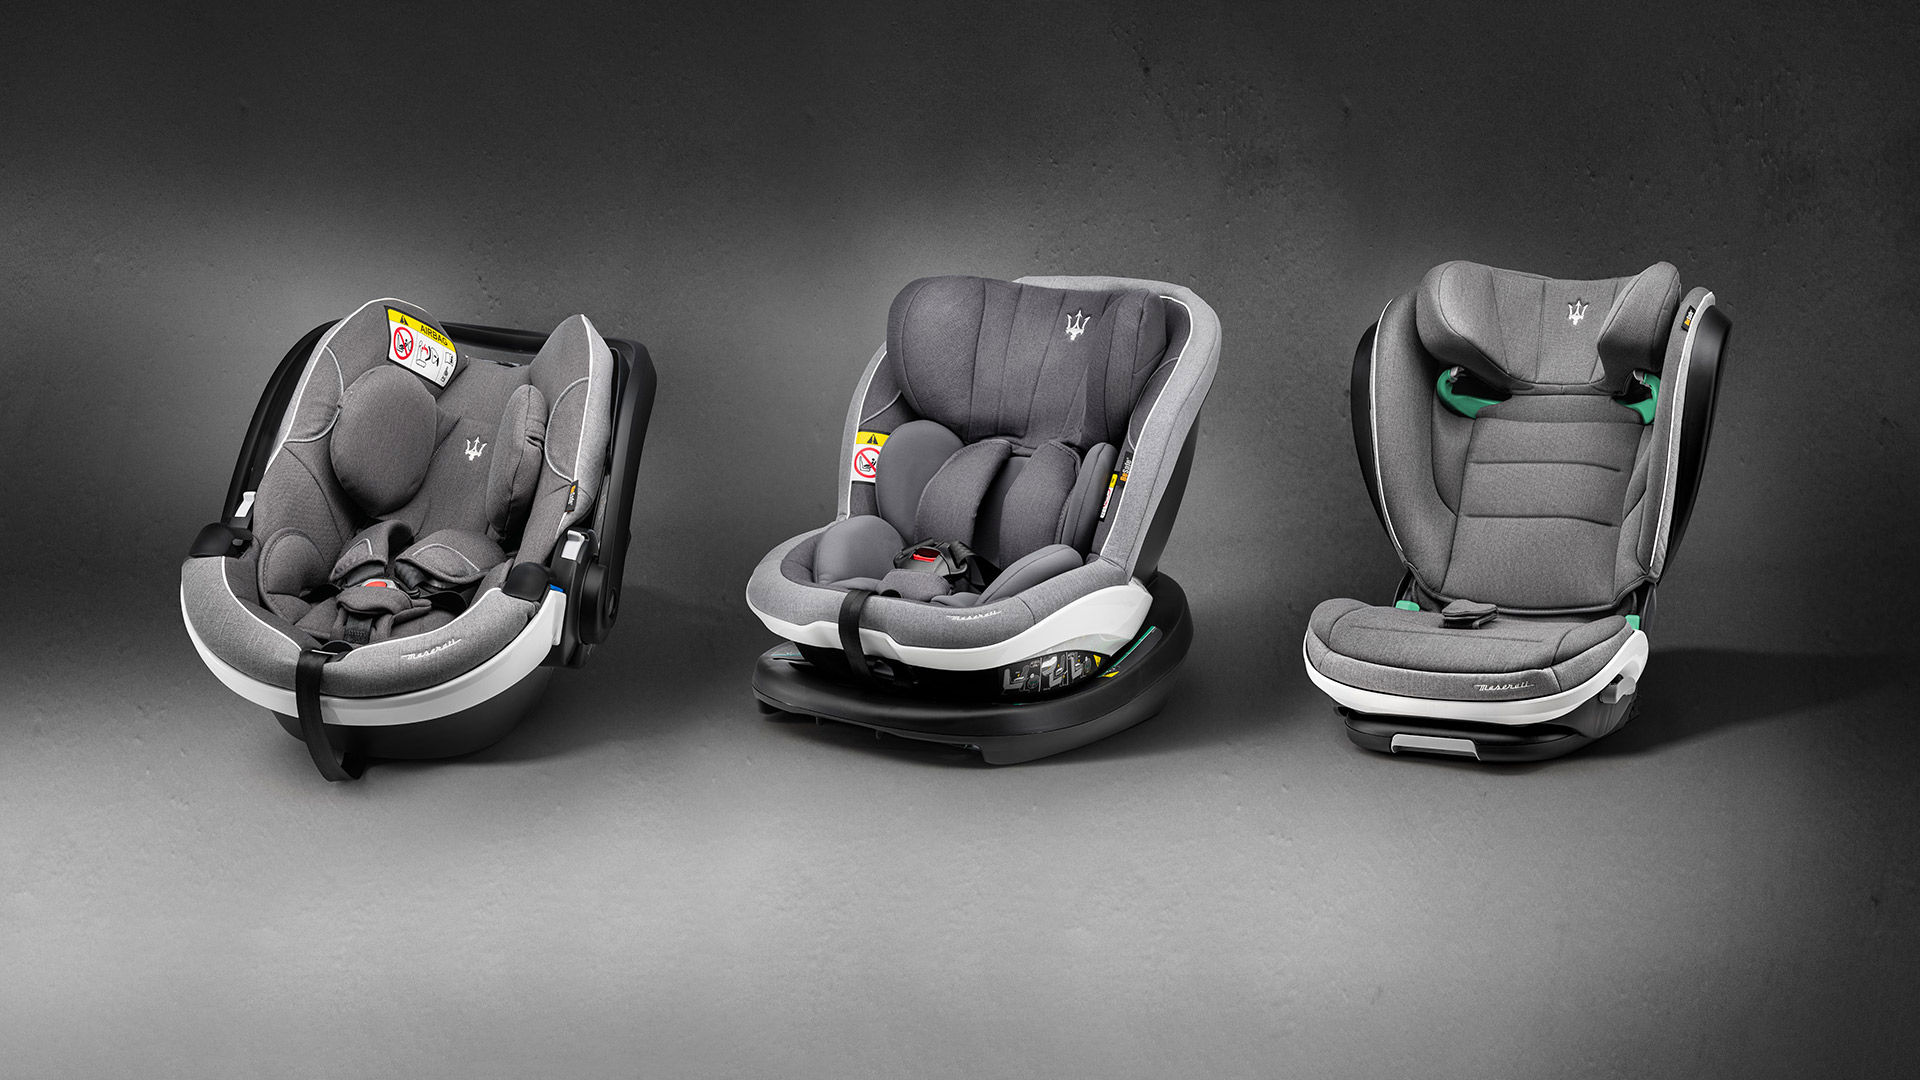 3 models of child seats for Maserati Quattroporte